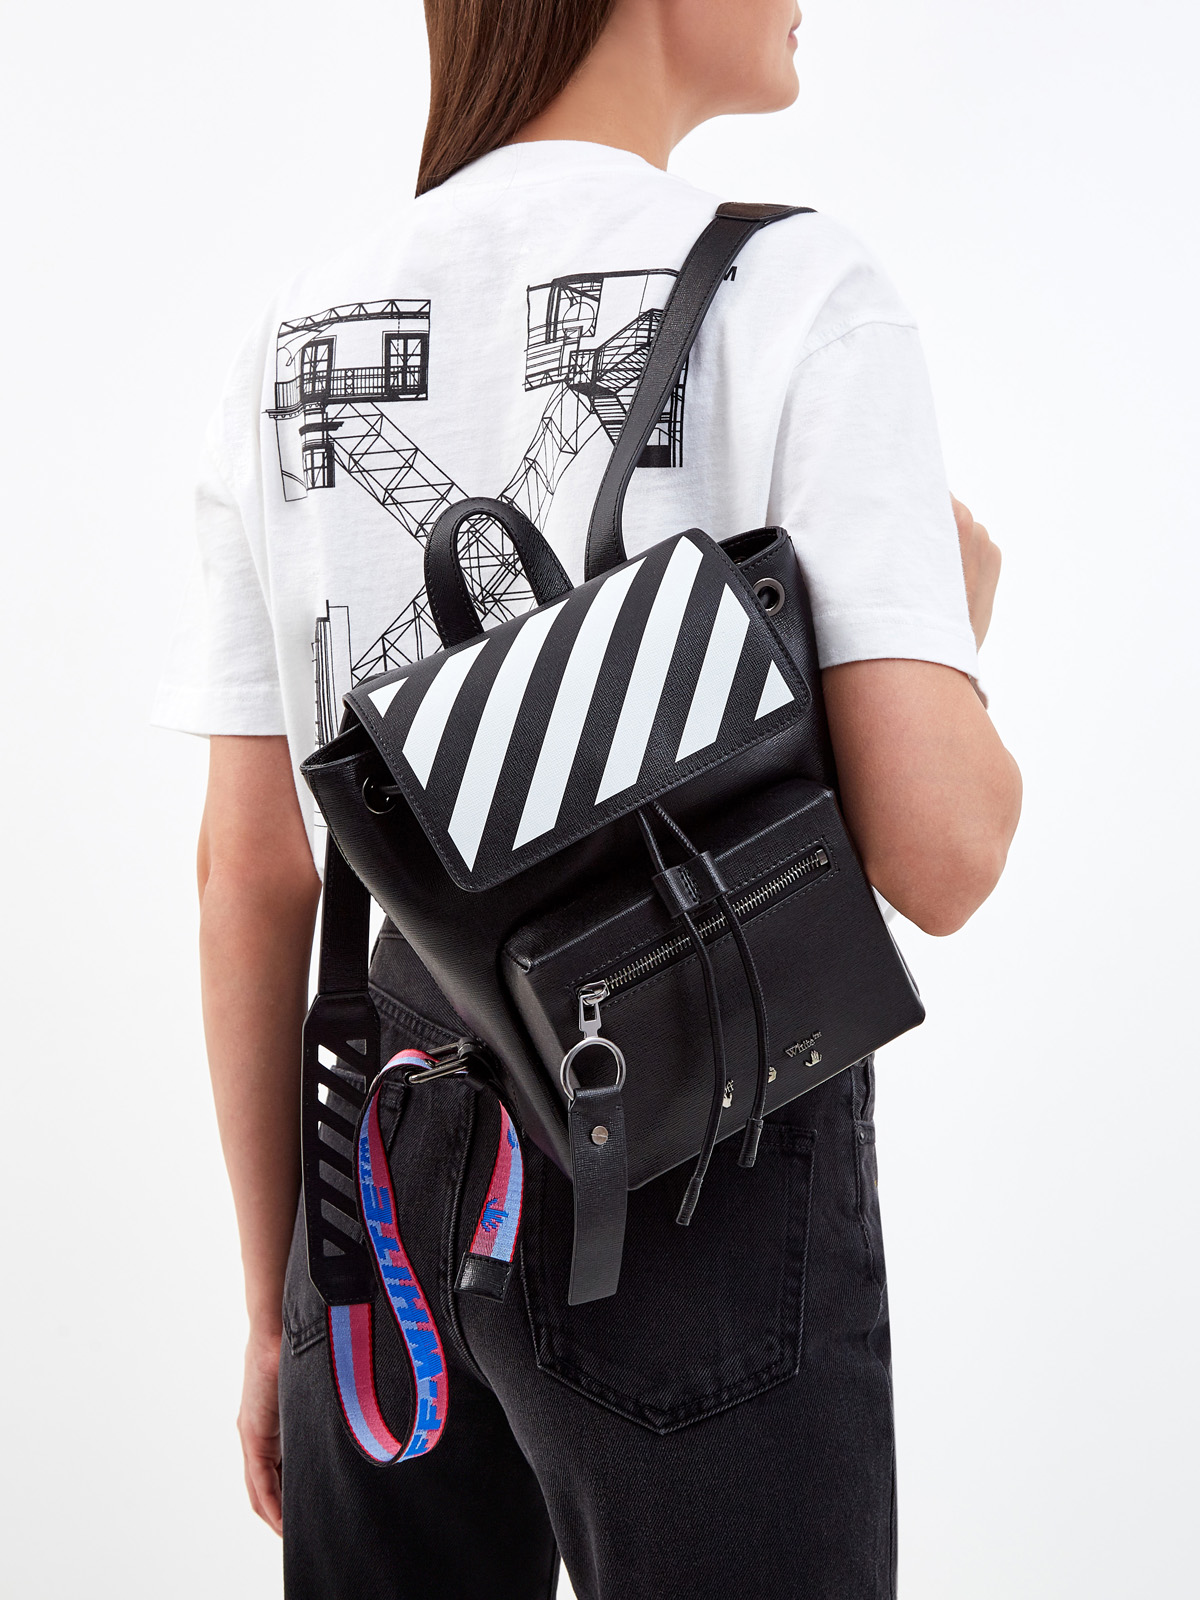 Кожаный рюкзак Diag с принтом в диагональную полоску OFF-WHITE, цвет черно-белый, размер 36;36.5;37.5;38;38.5;39;40 - фото 2